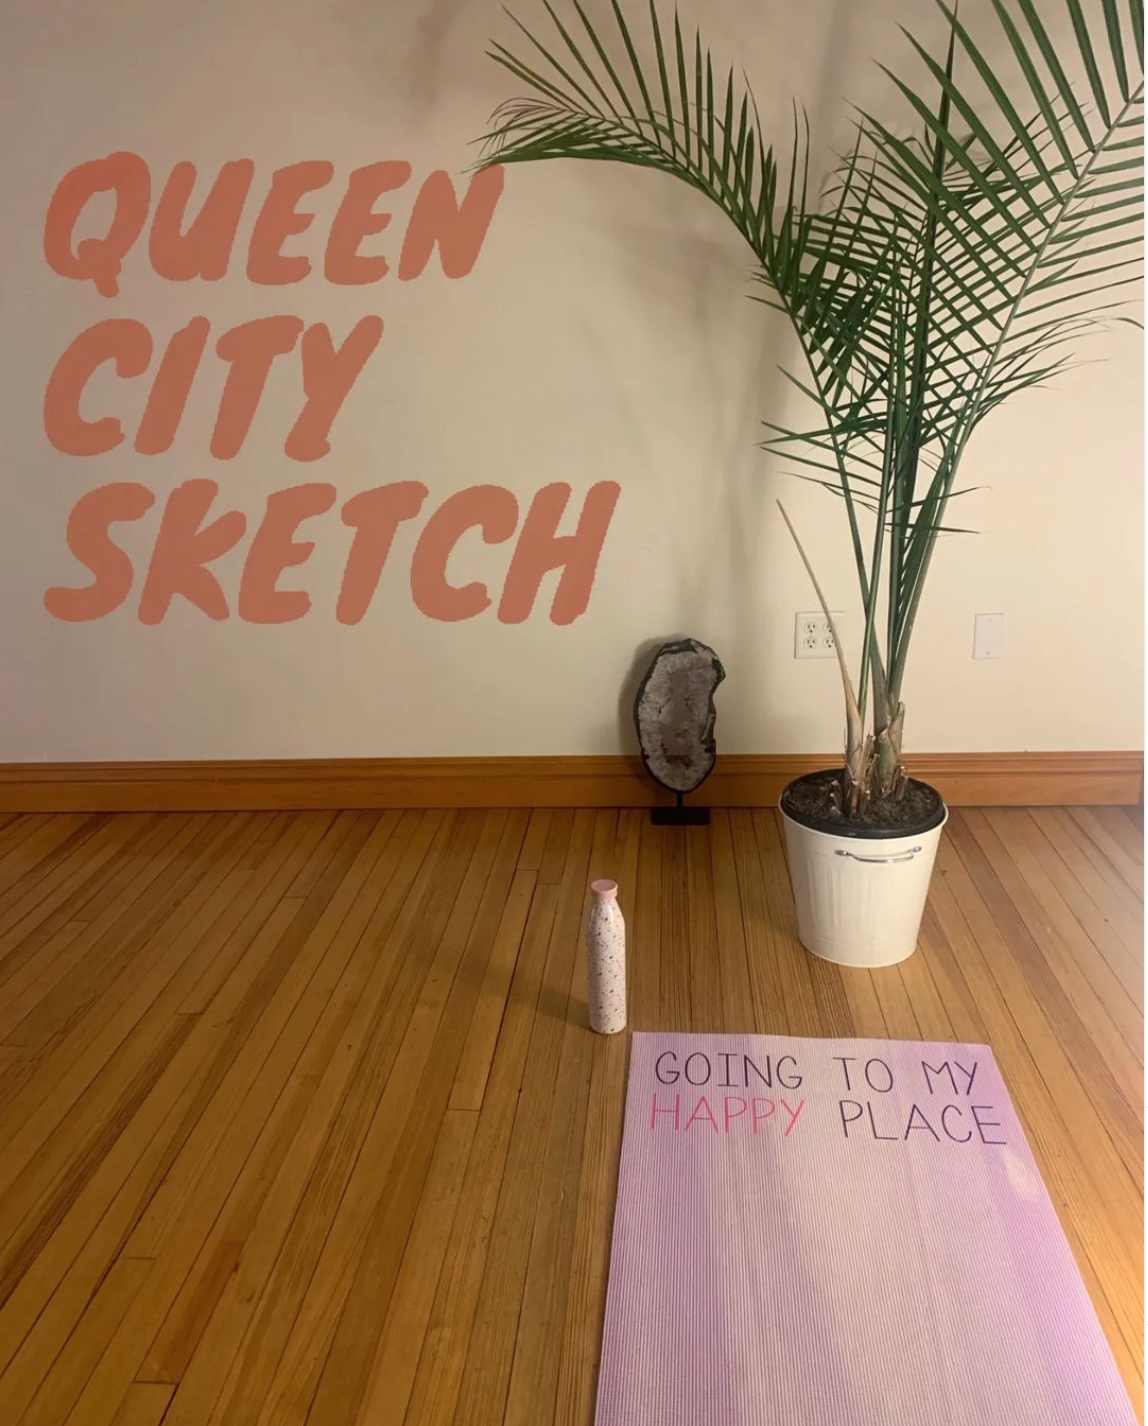 Queen City Sketch